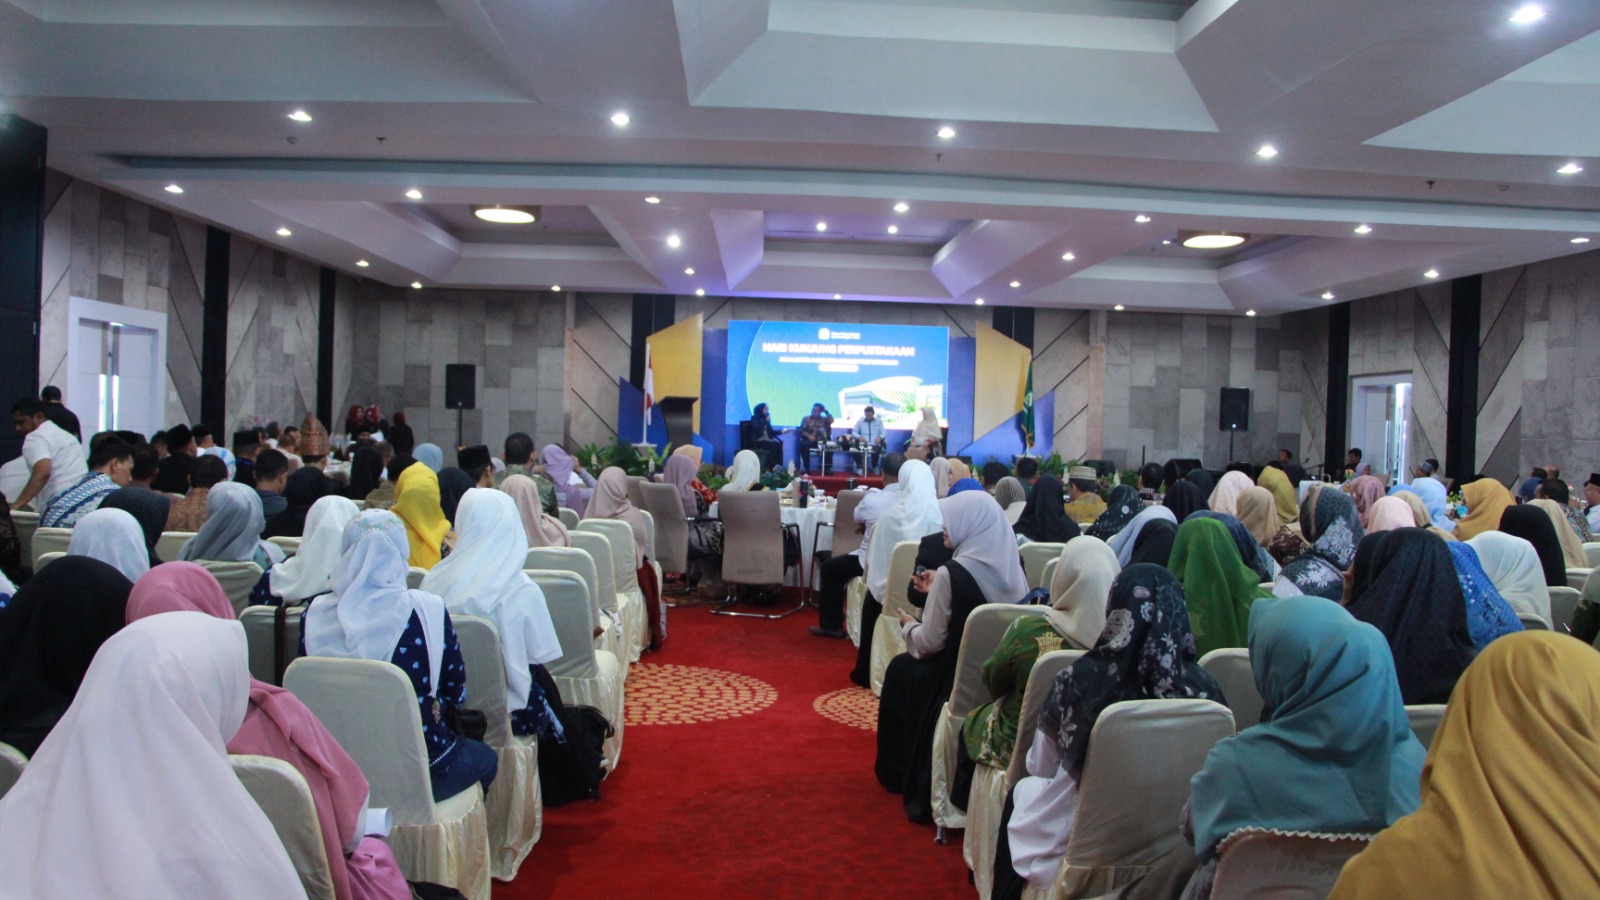 Deputi Bidang Konservasi Arsip Hadiri Hari Kunjung Perpustakaan di Aceh